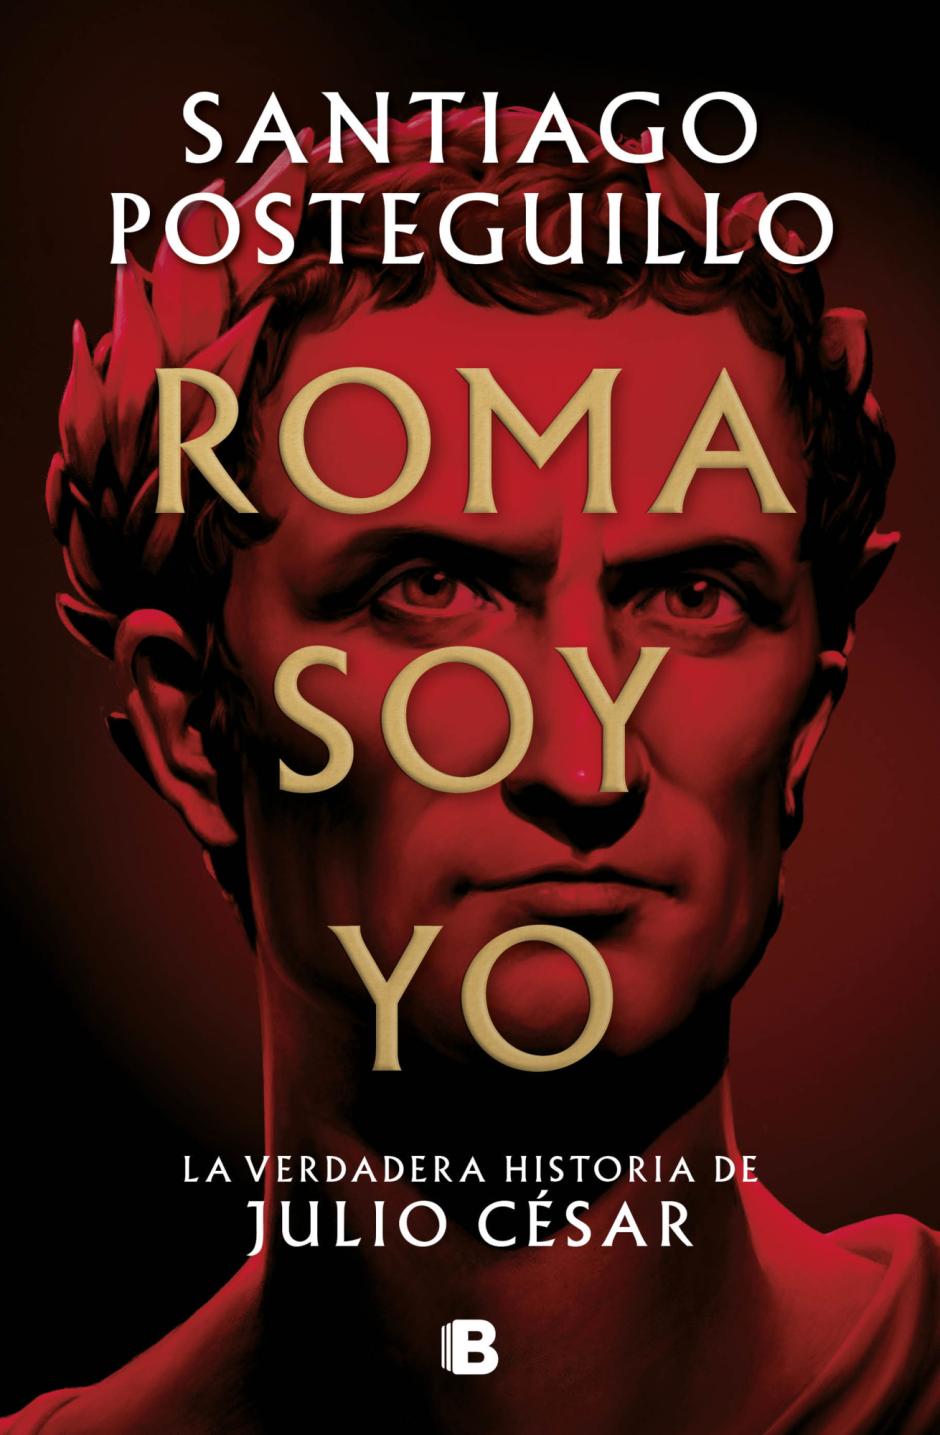 'Roma soy yo', de Santiago Posteguillo